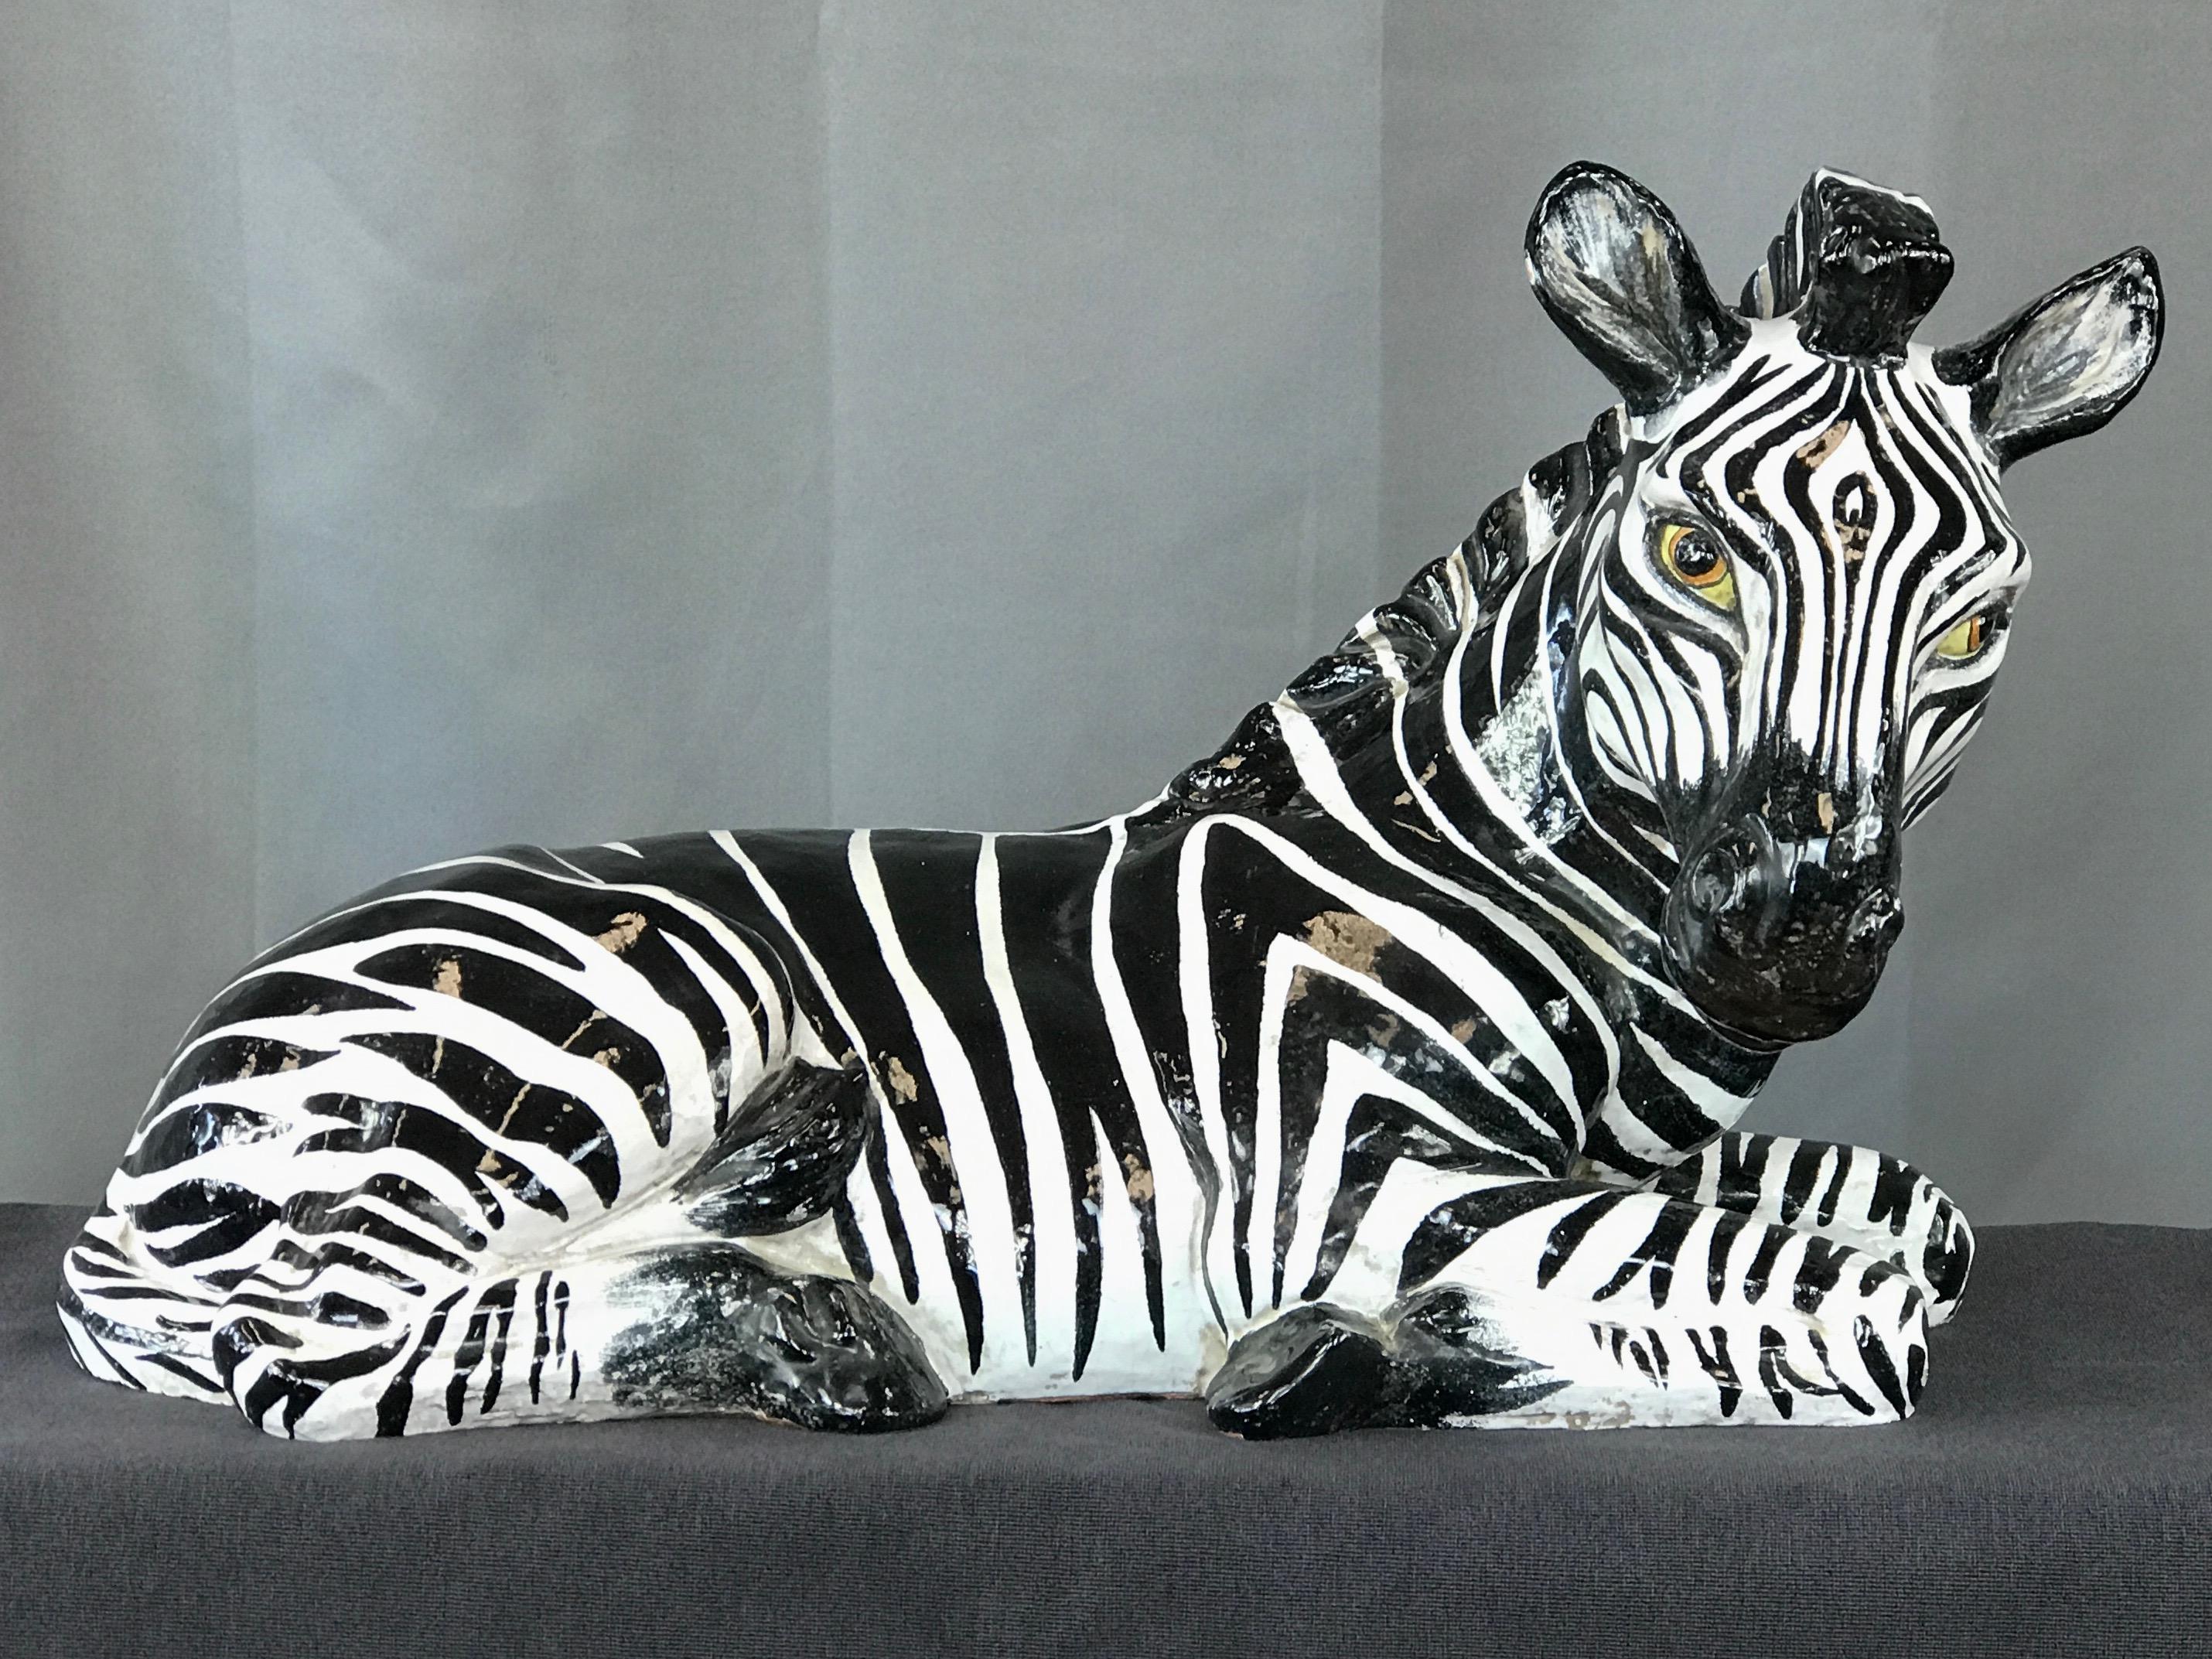 Eine große italienische Zebra-Skulptur aus glasierter Terrakotta im Stil von Manlio Trucco, Hollywood Regency.

Nahezu lebensgroß dargestellt, wie ein neugeborenes Fohlen in Ruhe. Knackige Handbemalung in auffallend glänzender schwarzer und weißer